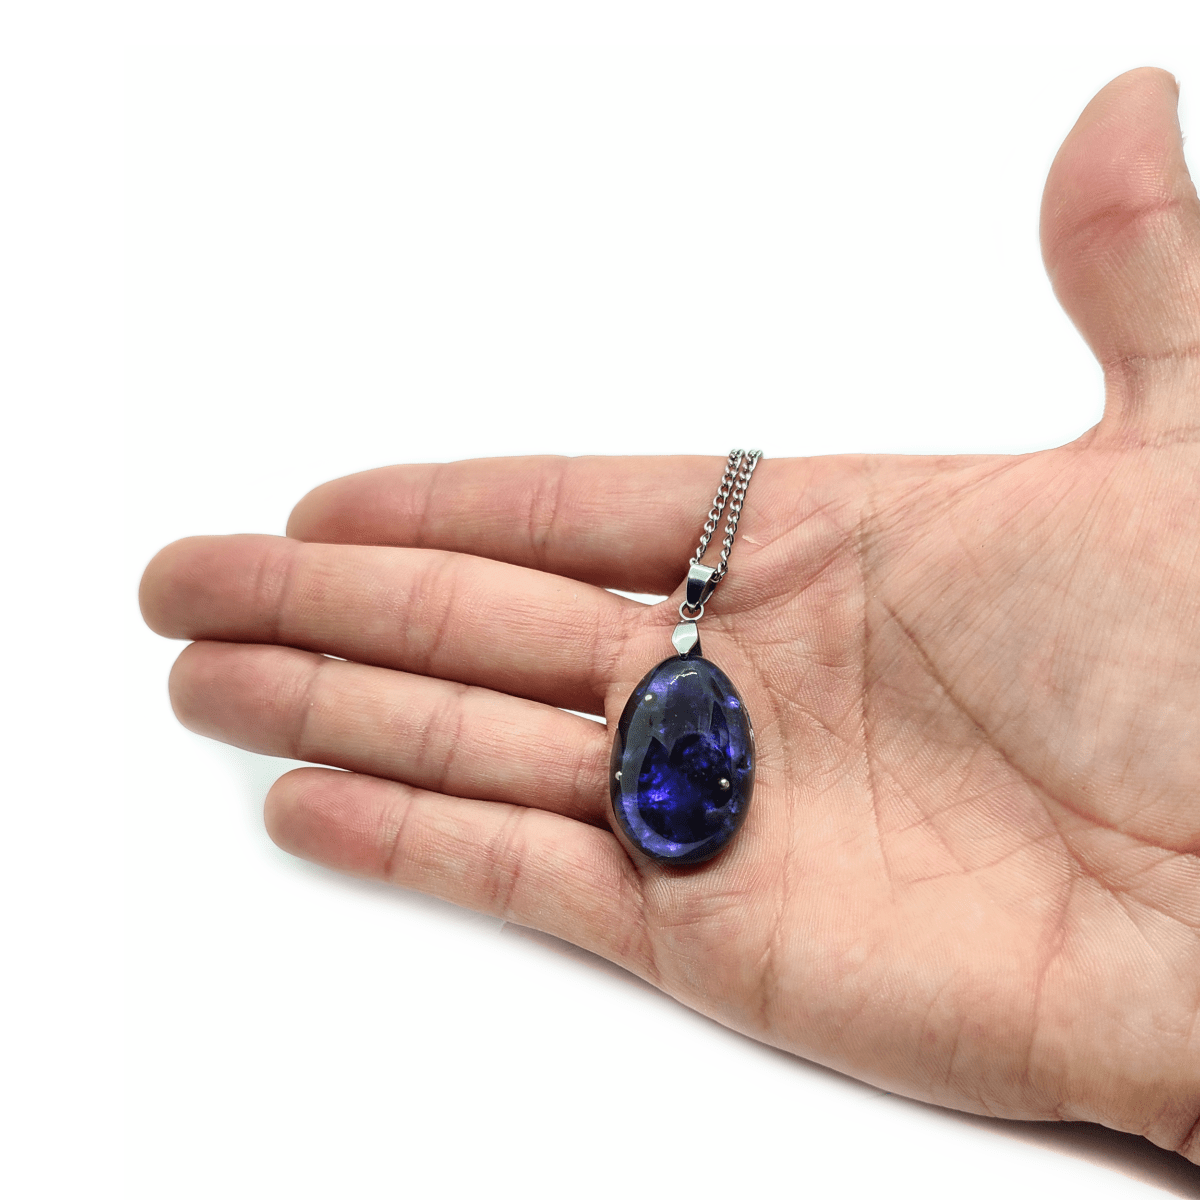 Dunkelblaues Orgonit Amulett mit stark glänzenden Kristallen & silberner Halskette, welches von einer Hand gehalten wird.